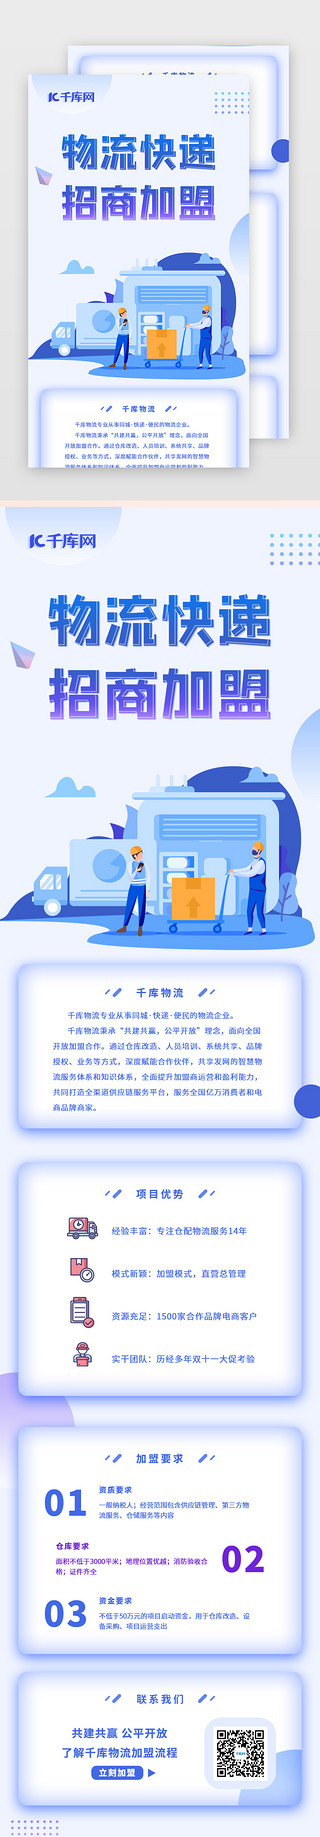 物流公司名片UI设计素材_蓝色运输物流商务招商加盟企业H5